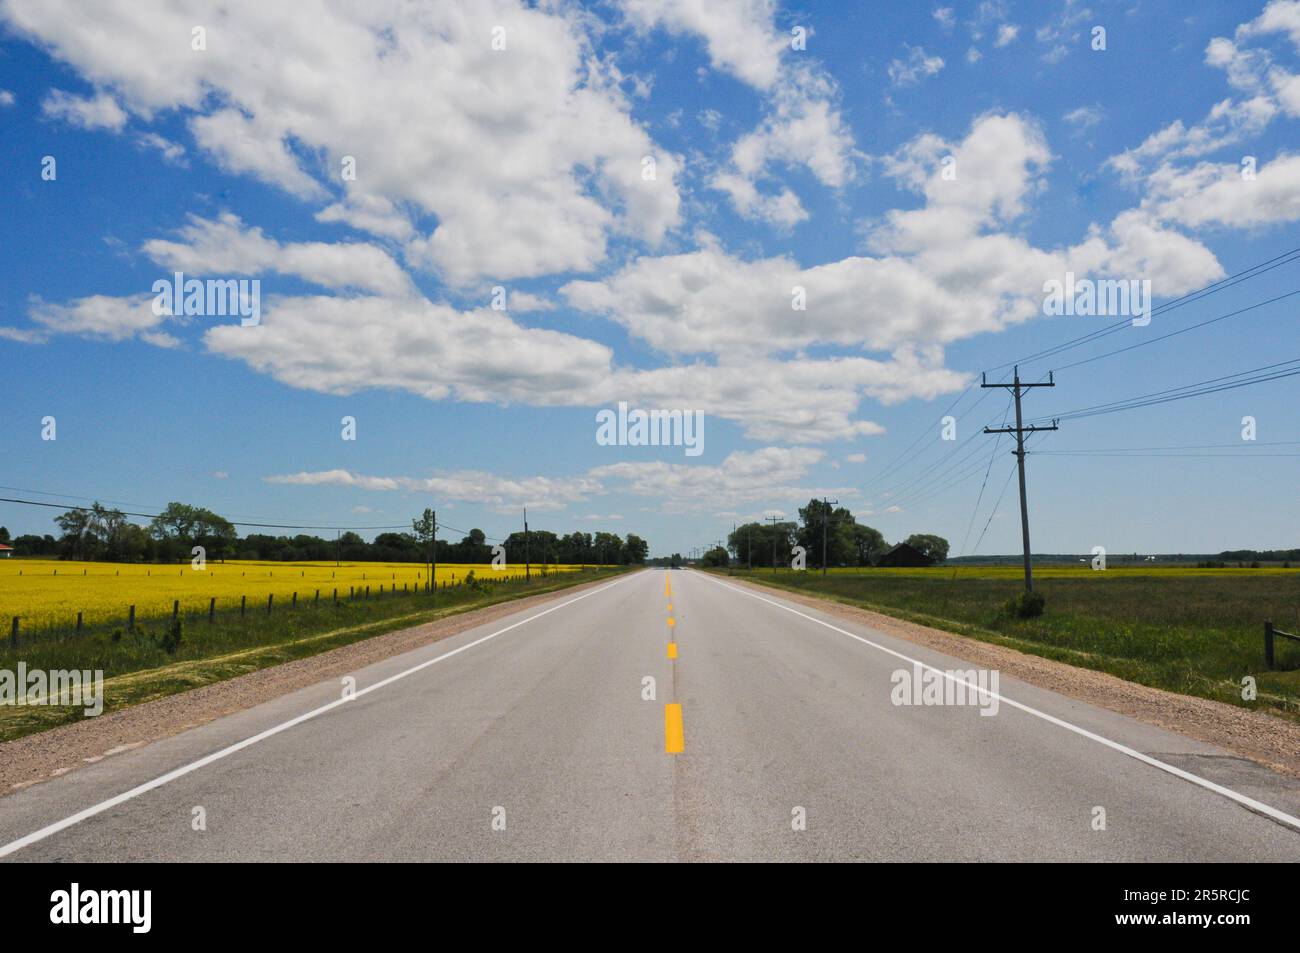 Si guarda al centro di una strada dritta verso l'orizzonte bisettando campi agricoli di piante di canola, e cieli azzurri con nuvole di cumulo frattus Foto Stock